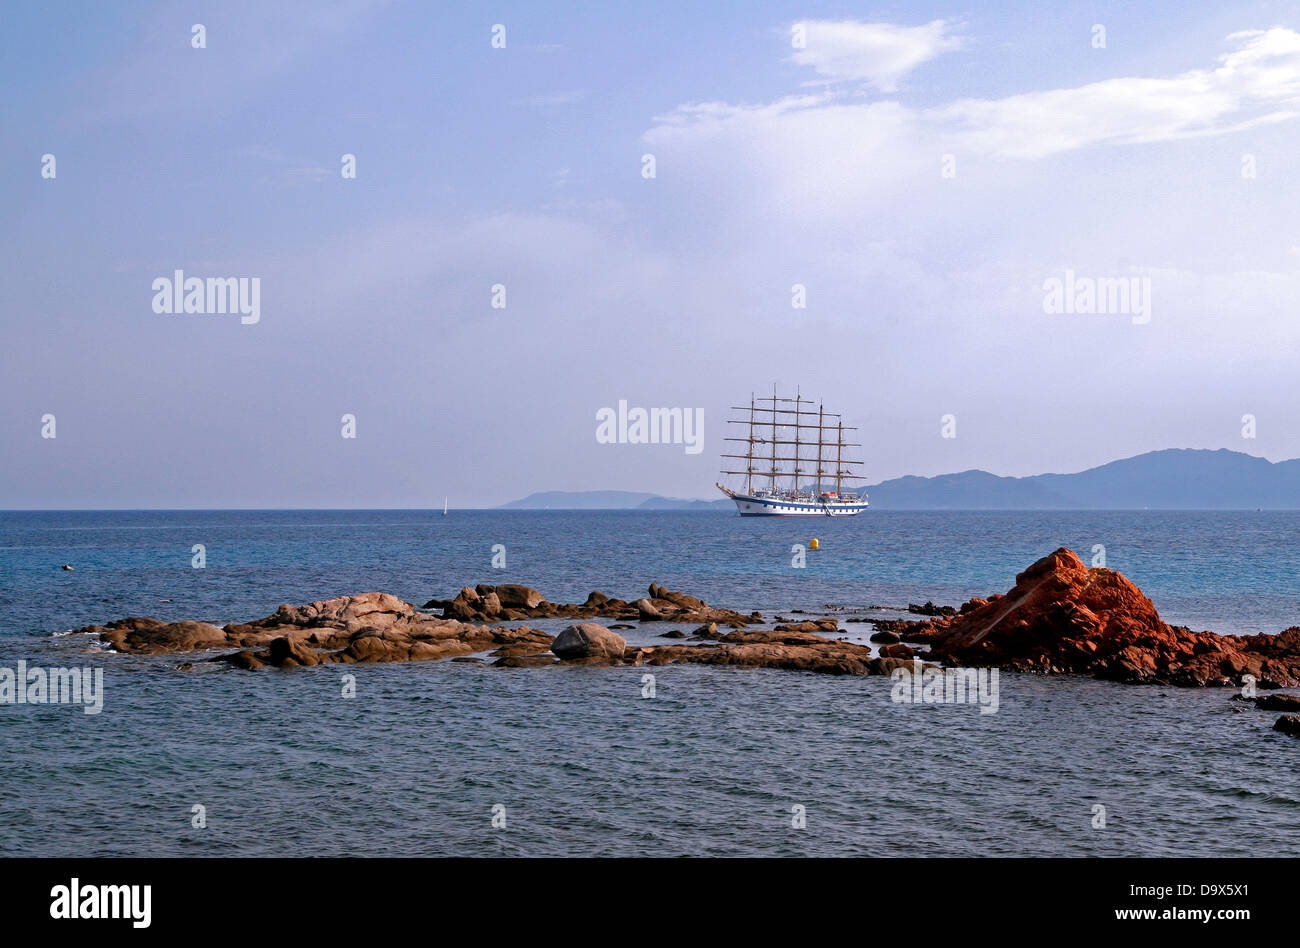 Die Star Clippers in der Nähe des Strandes von Palombaggia im Süden Korsikas. Frankreich Stockfoto